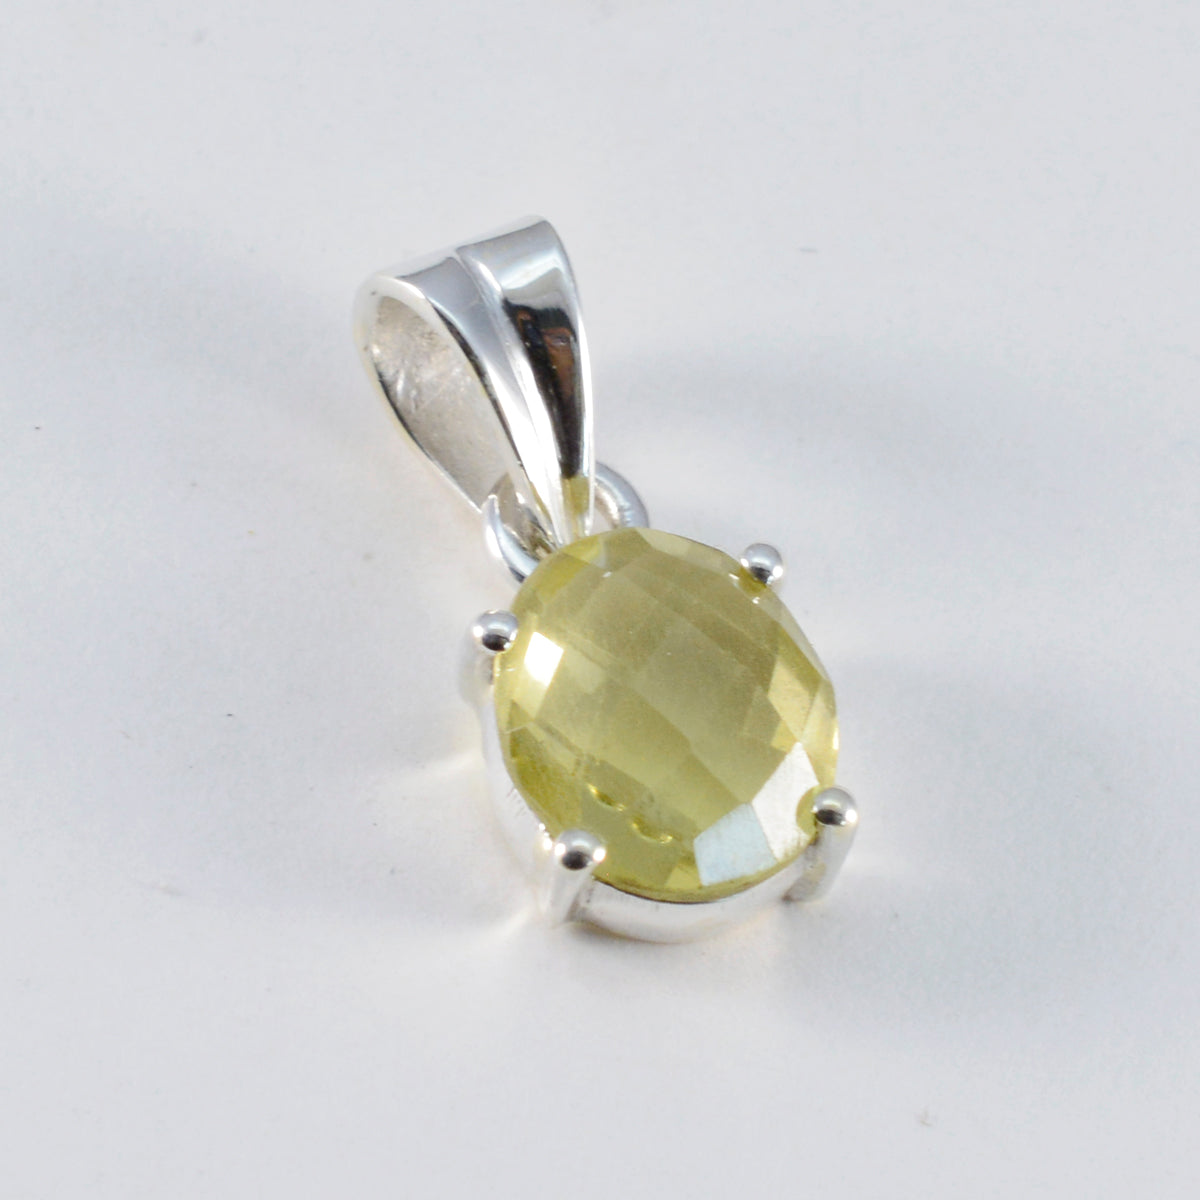 riyo beddable gems ovale damier jaune citron quartz pendentif en argent massif cadeau pour le dimanche de pâques